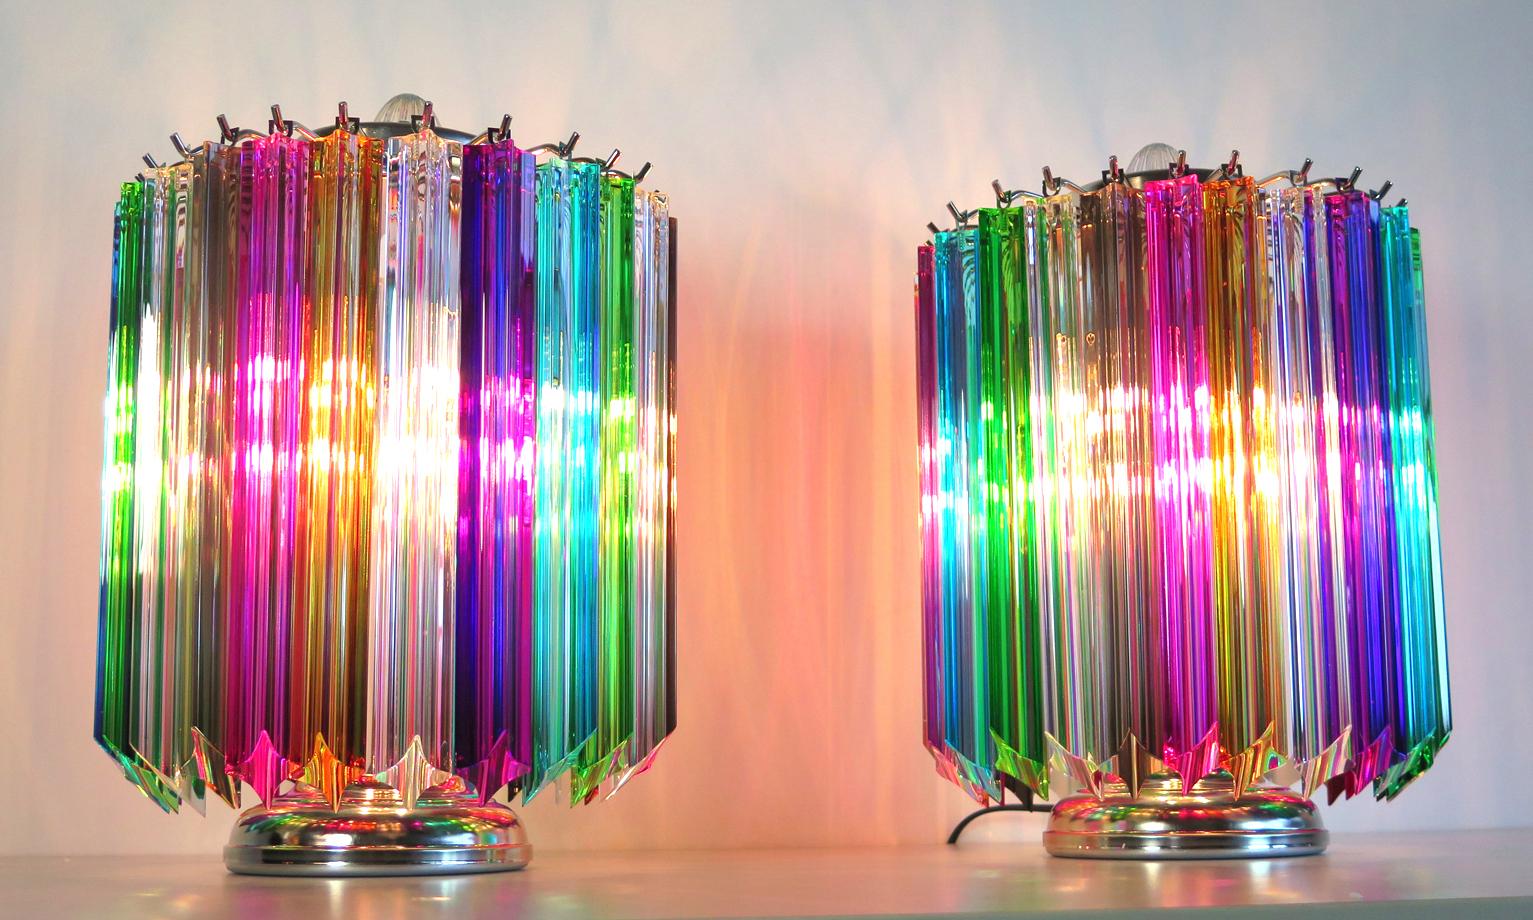 Tischleuchte Quadriedri mehrfarbig - Modell Mariangela
Magnificent Paar Tischlampen, 24 quadriedri Murano-Kristall mehrfarbigen Prisma für jede Lampe. Gestell aus vernickeltem Metall. Elegantes Möbelstück.
Zeitraum: Ende des 20.